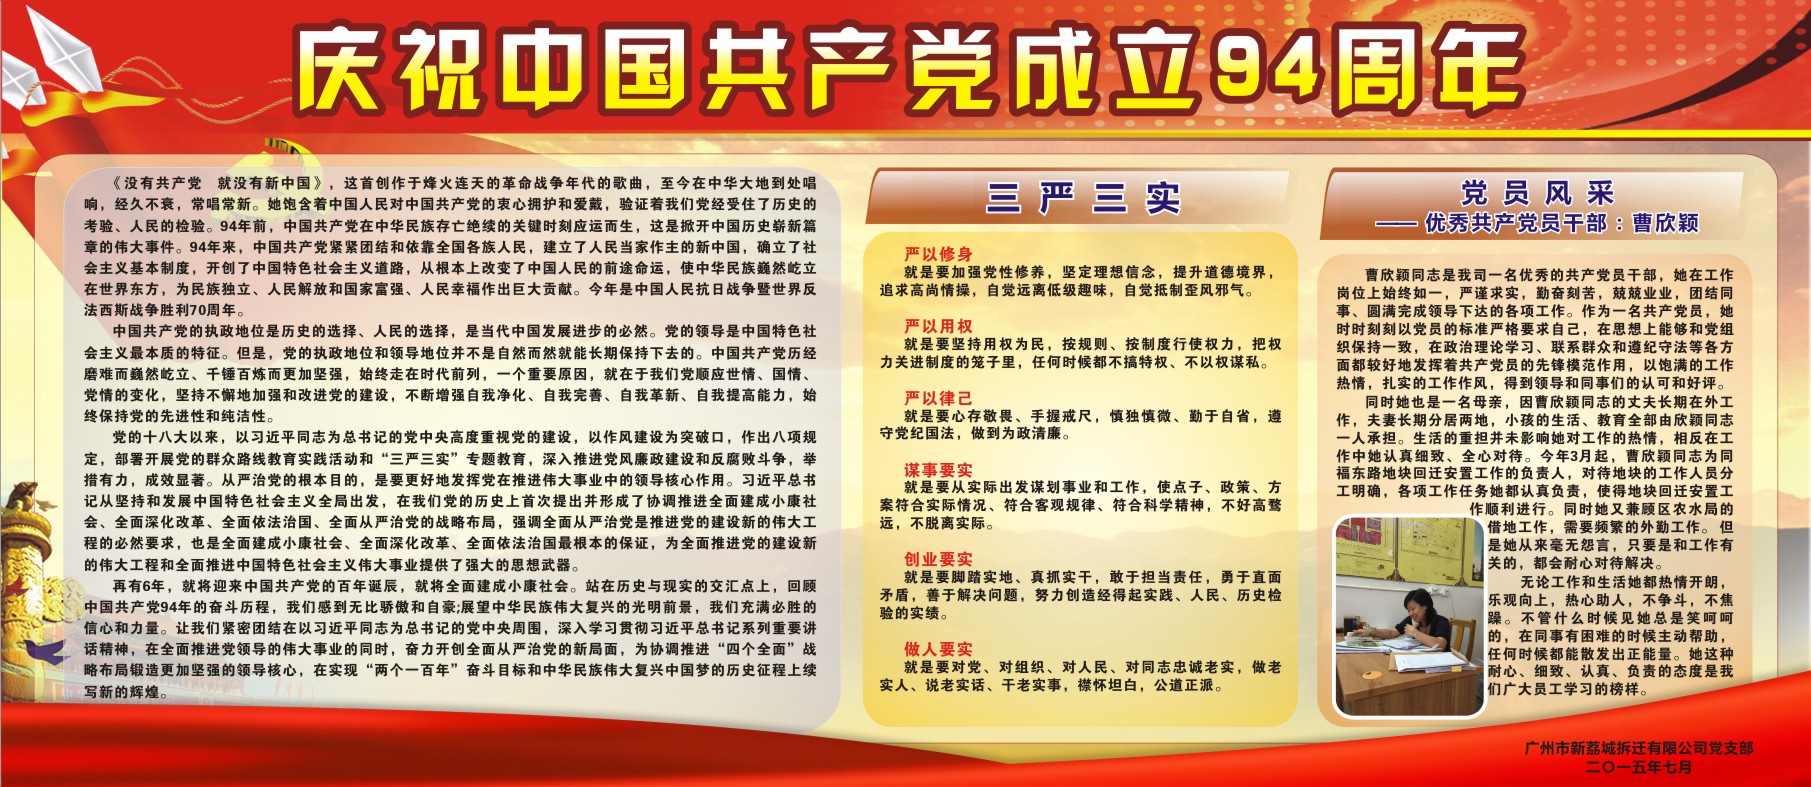 庆祝中国共产党成立94周年